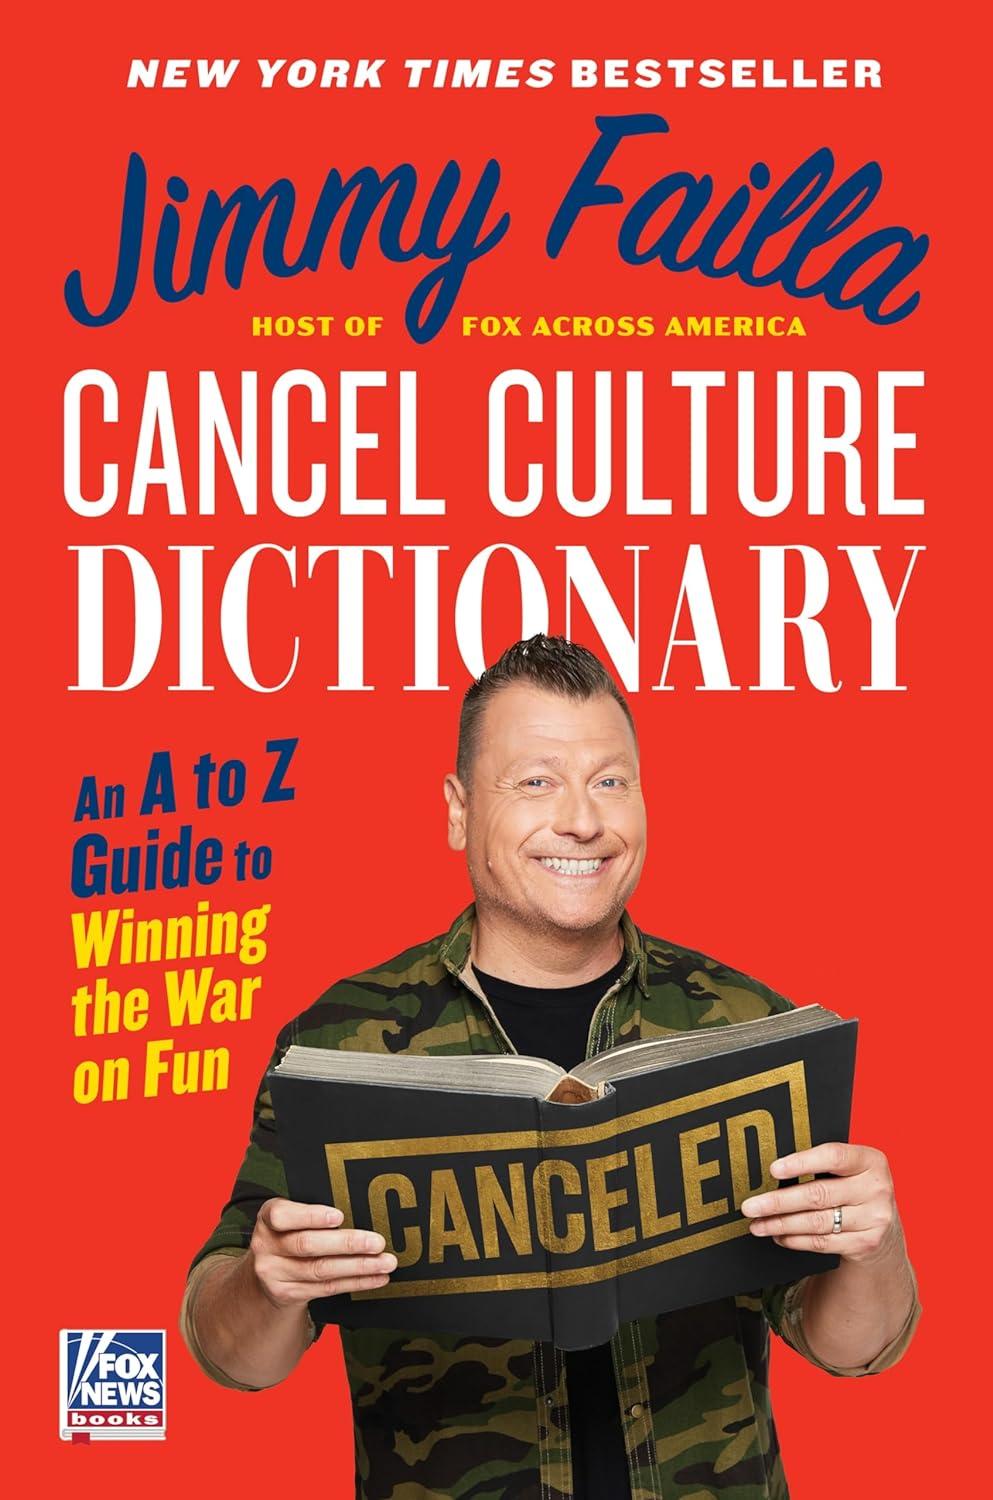 Cancel Culture Dictionary